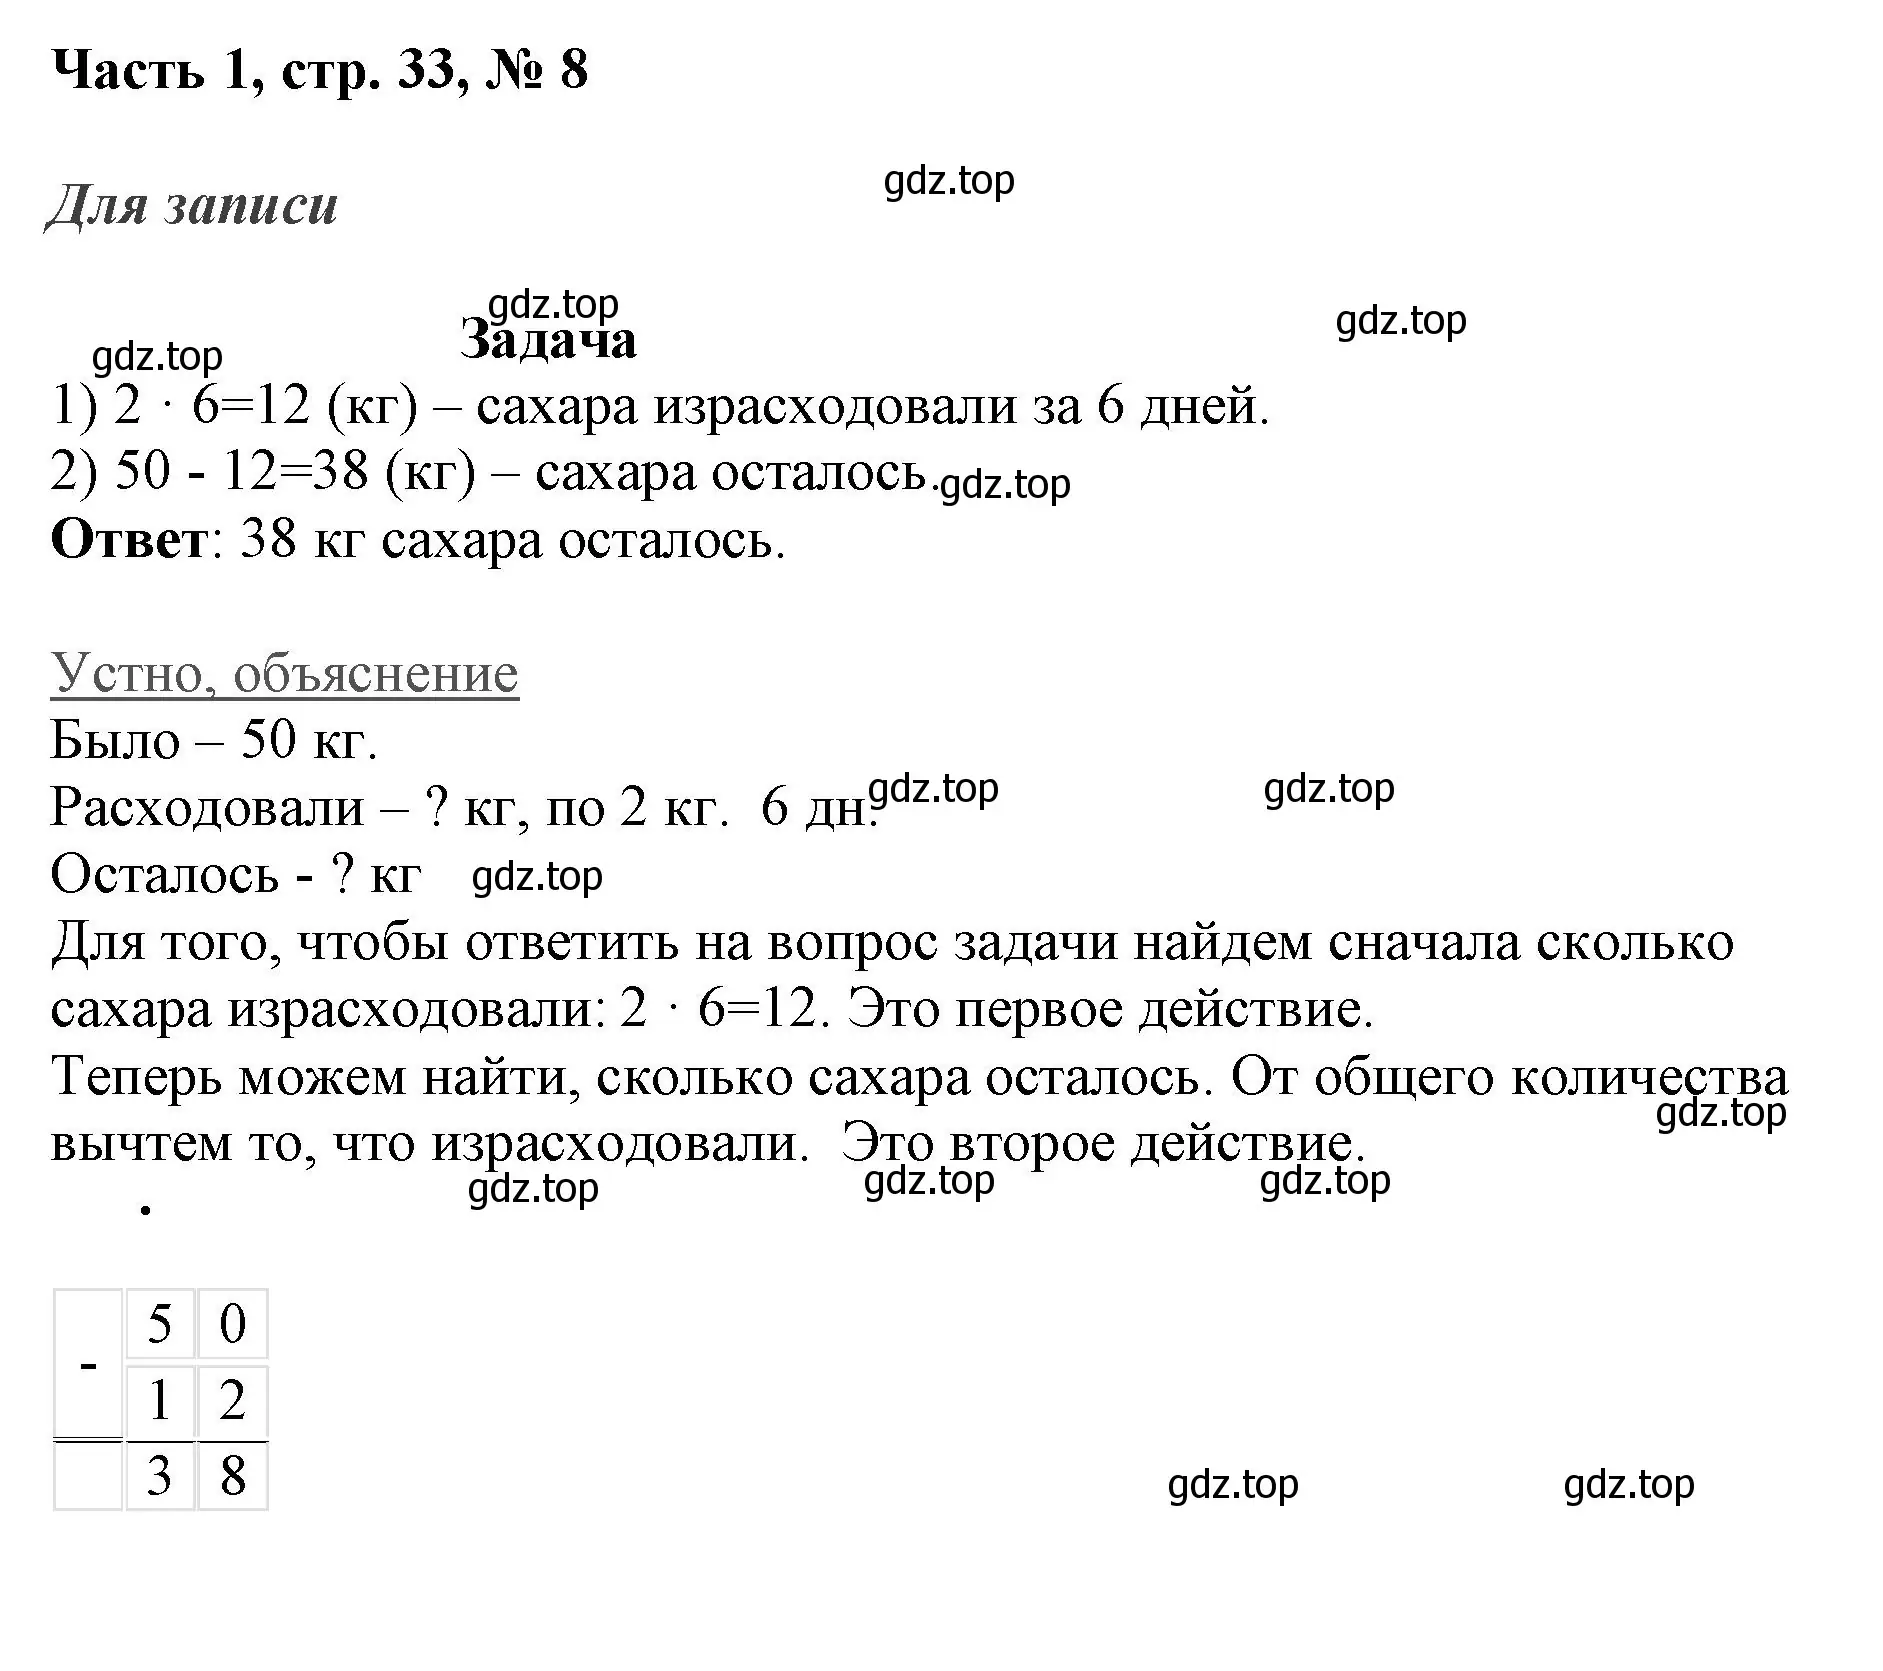 Решение номер 8 (страница 33) гдз по математике 3 класс Моро, Бантова, учебник 1 часть